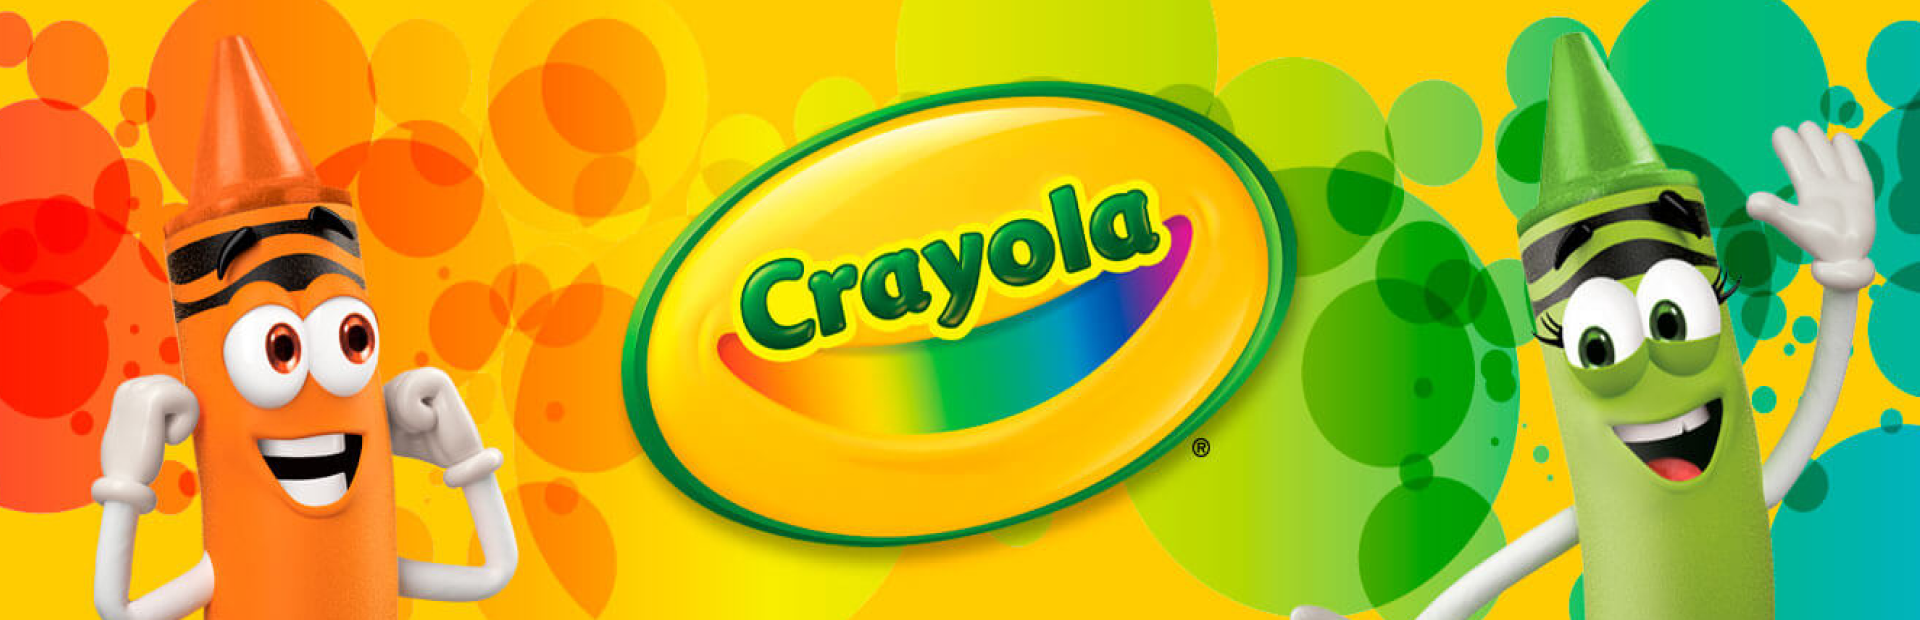 Crayola Washable Kids' Paint Set, 10-Colors, Neon 